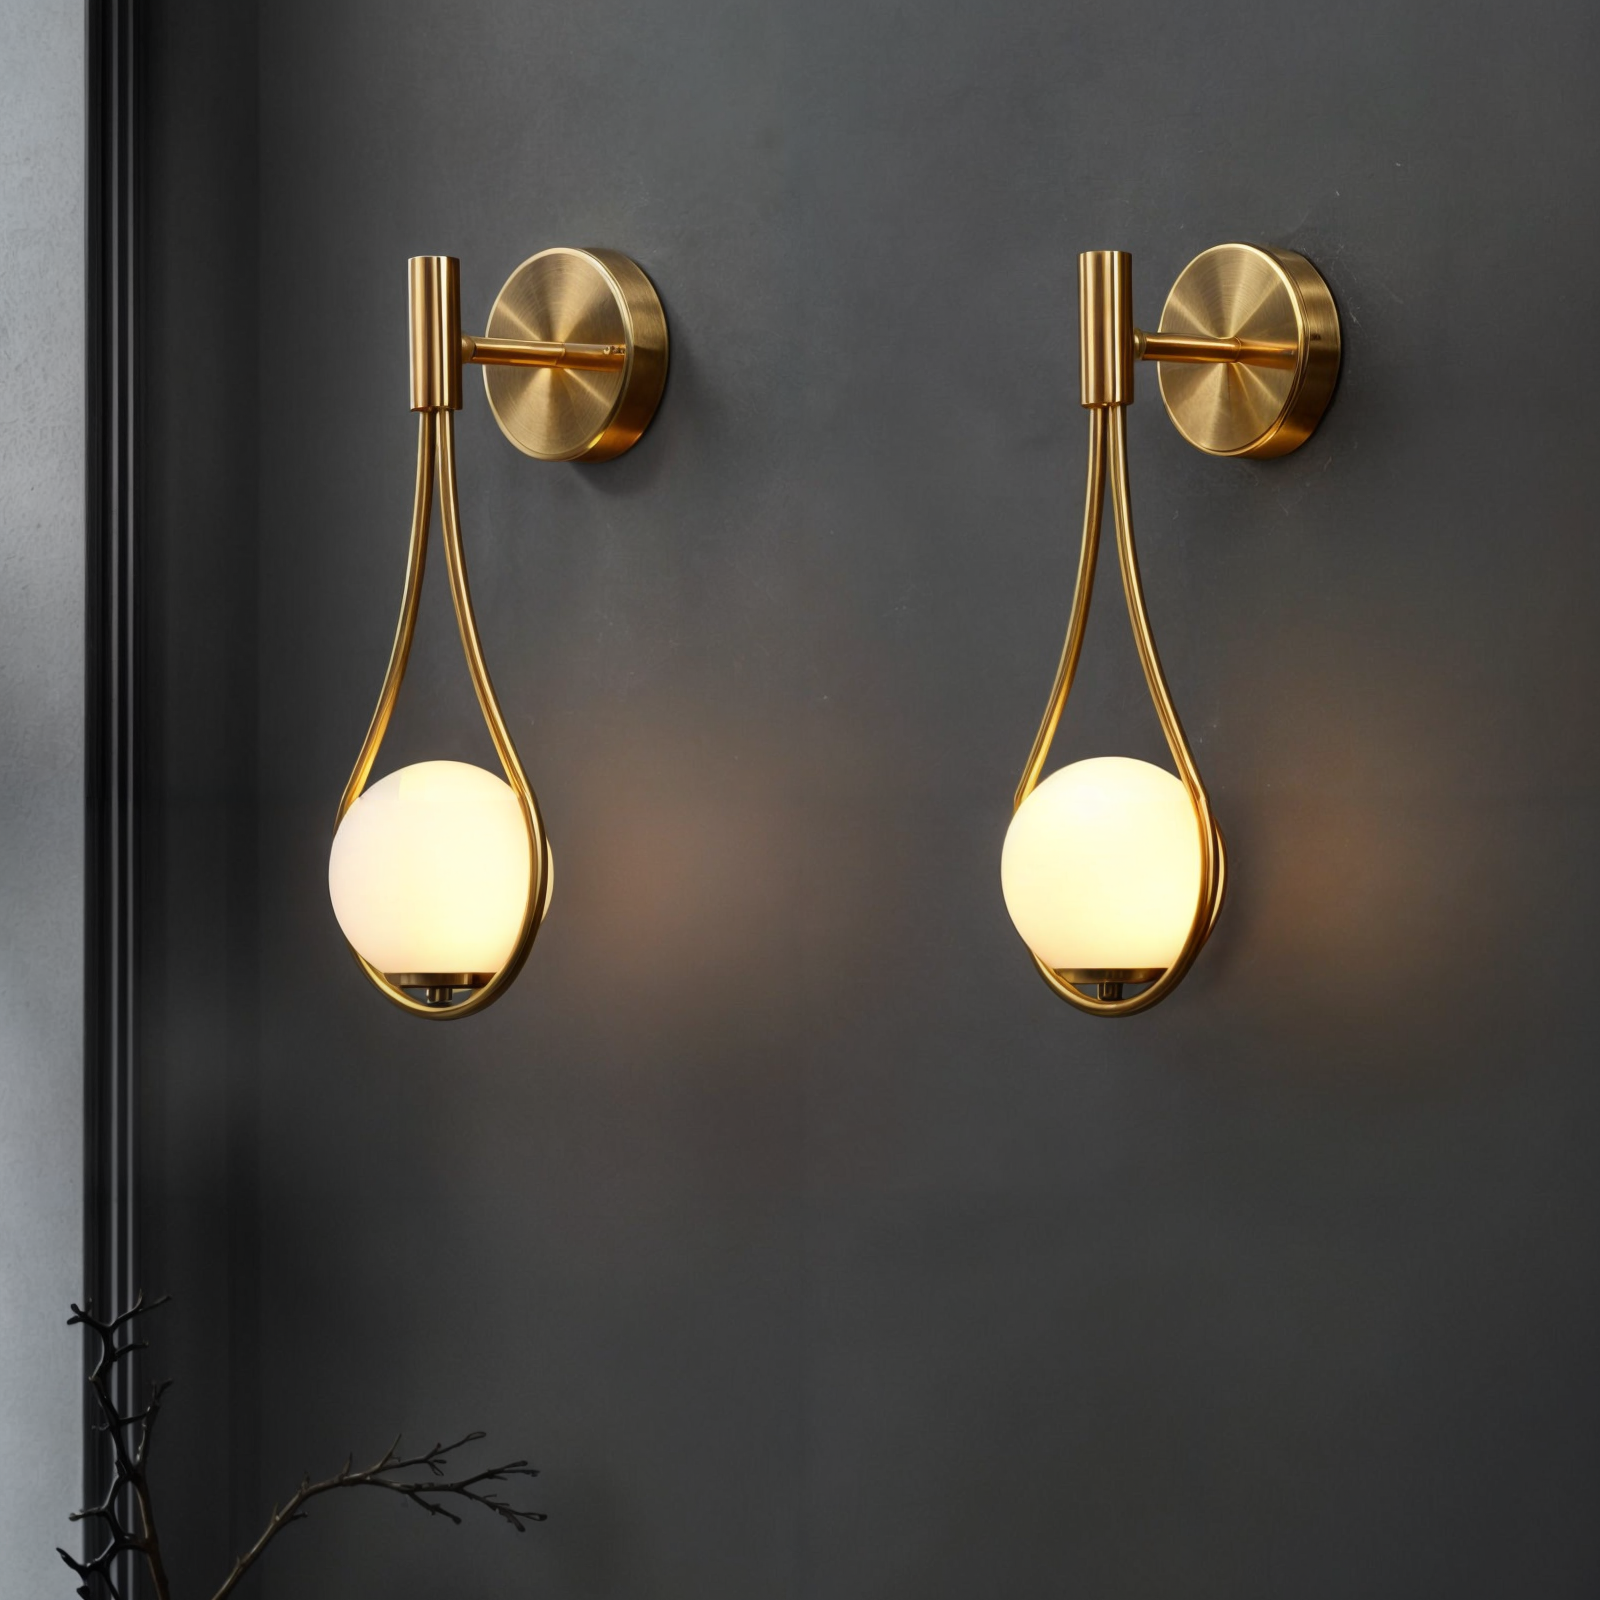 Moderne nordische Wandleuchte, schwarz/gold, G4 LED, Eisen+Glas, Milchglas, Up/Down-Beleuchtung, ideal für Küche, Esszimmer, Bad, CE, ROHS zertifiziert